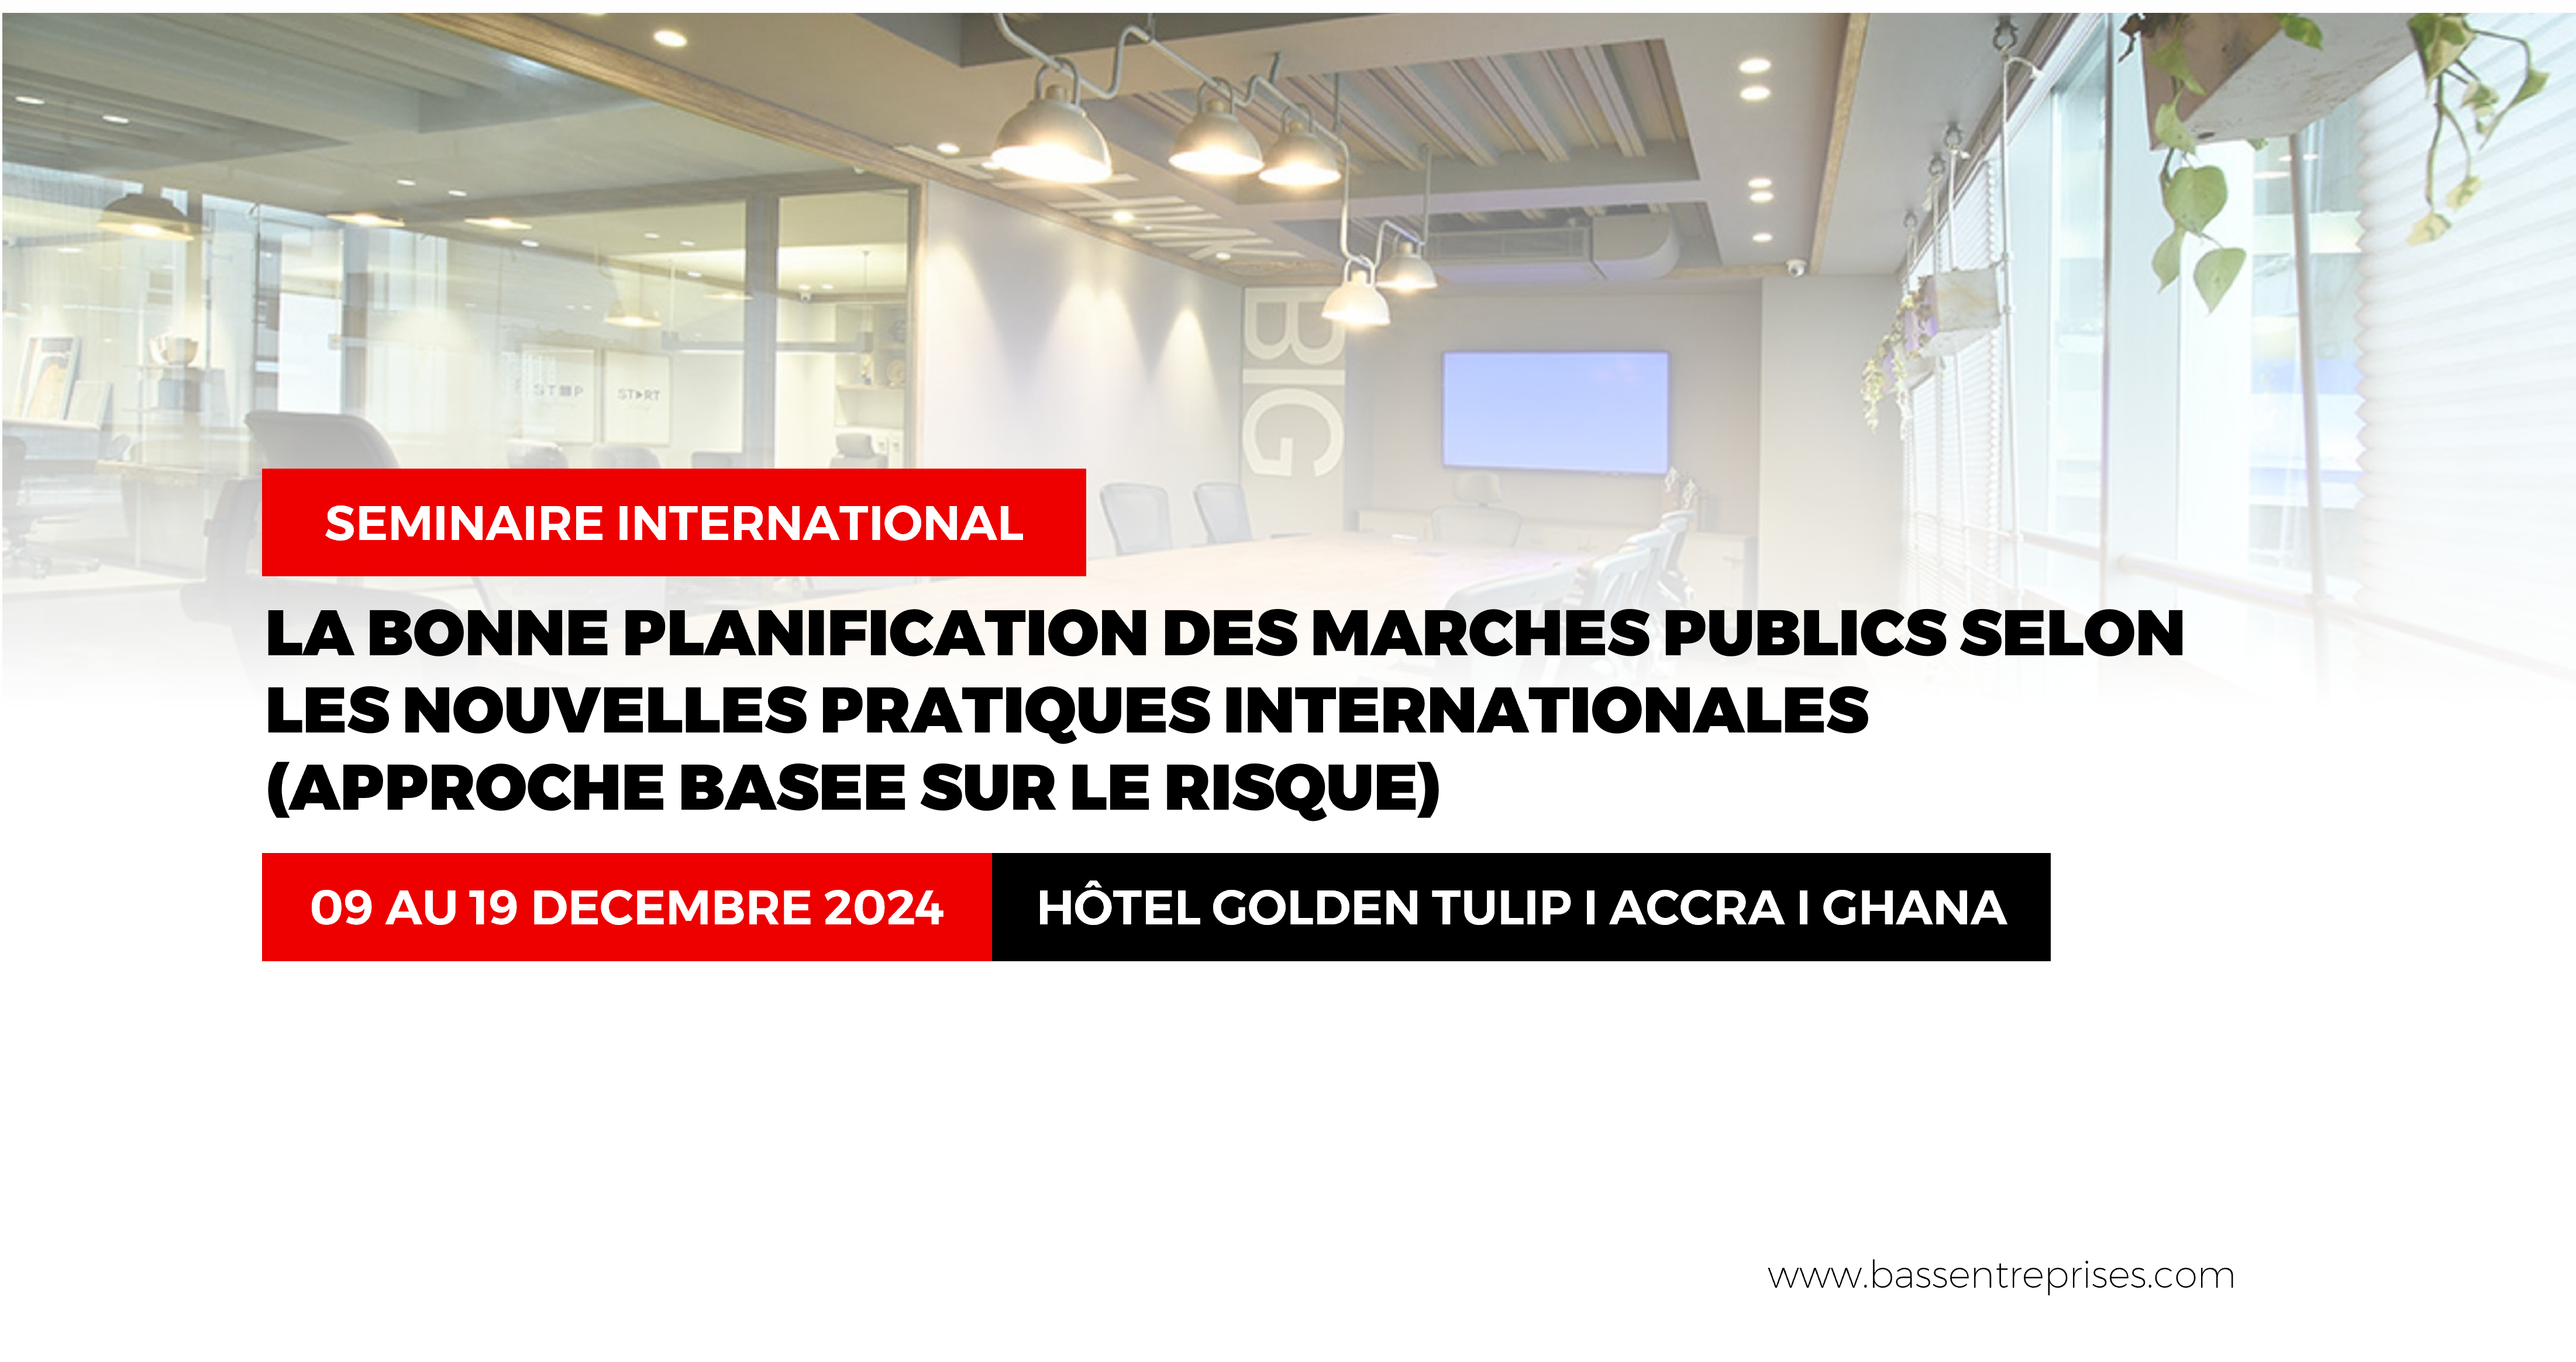 LA BONNE PLANIFICATION DES MARCHES PUBLICS SELON LES NOUVELLES PRATIQUES INTERNATIONALES (APPROCHE BASEE SUR LE RISQUE)